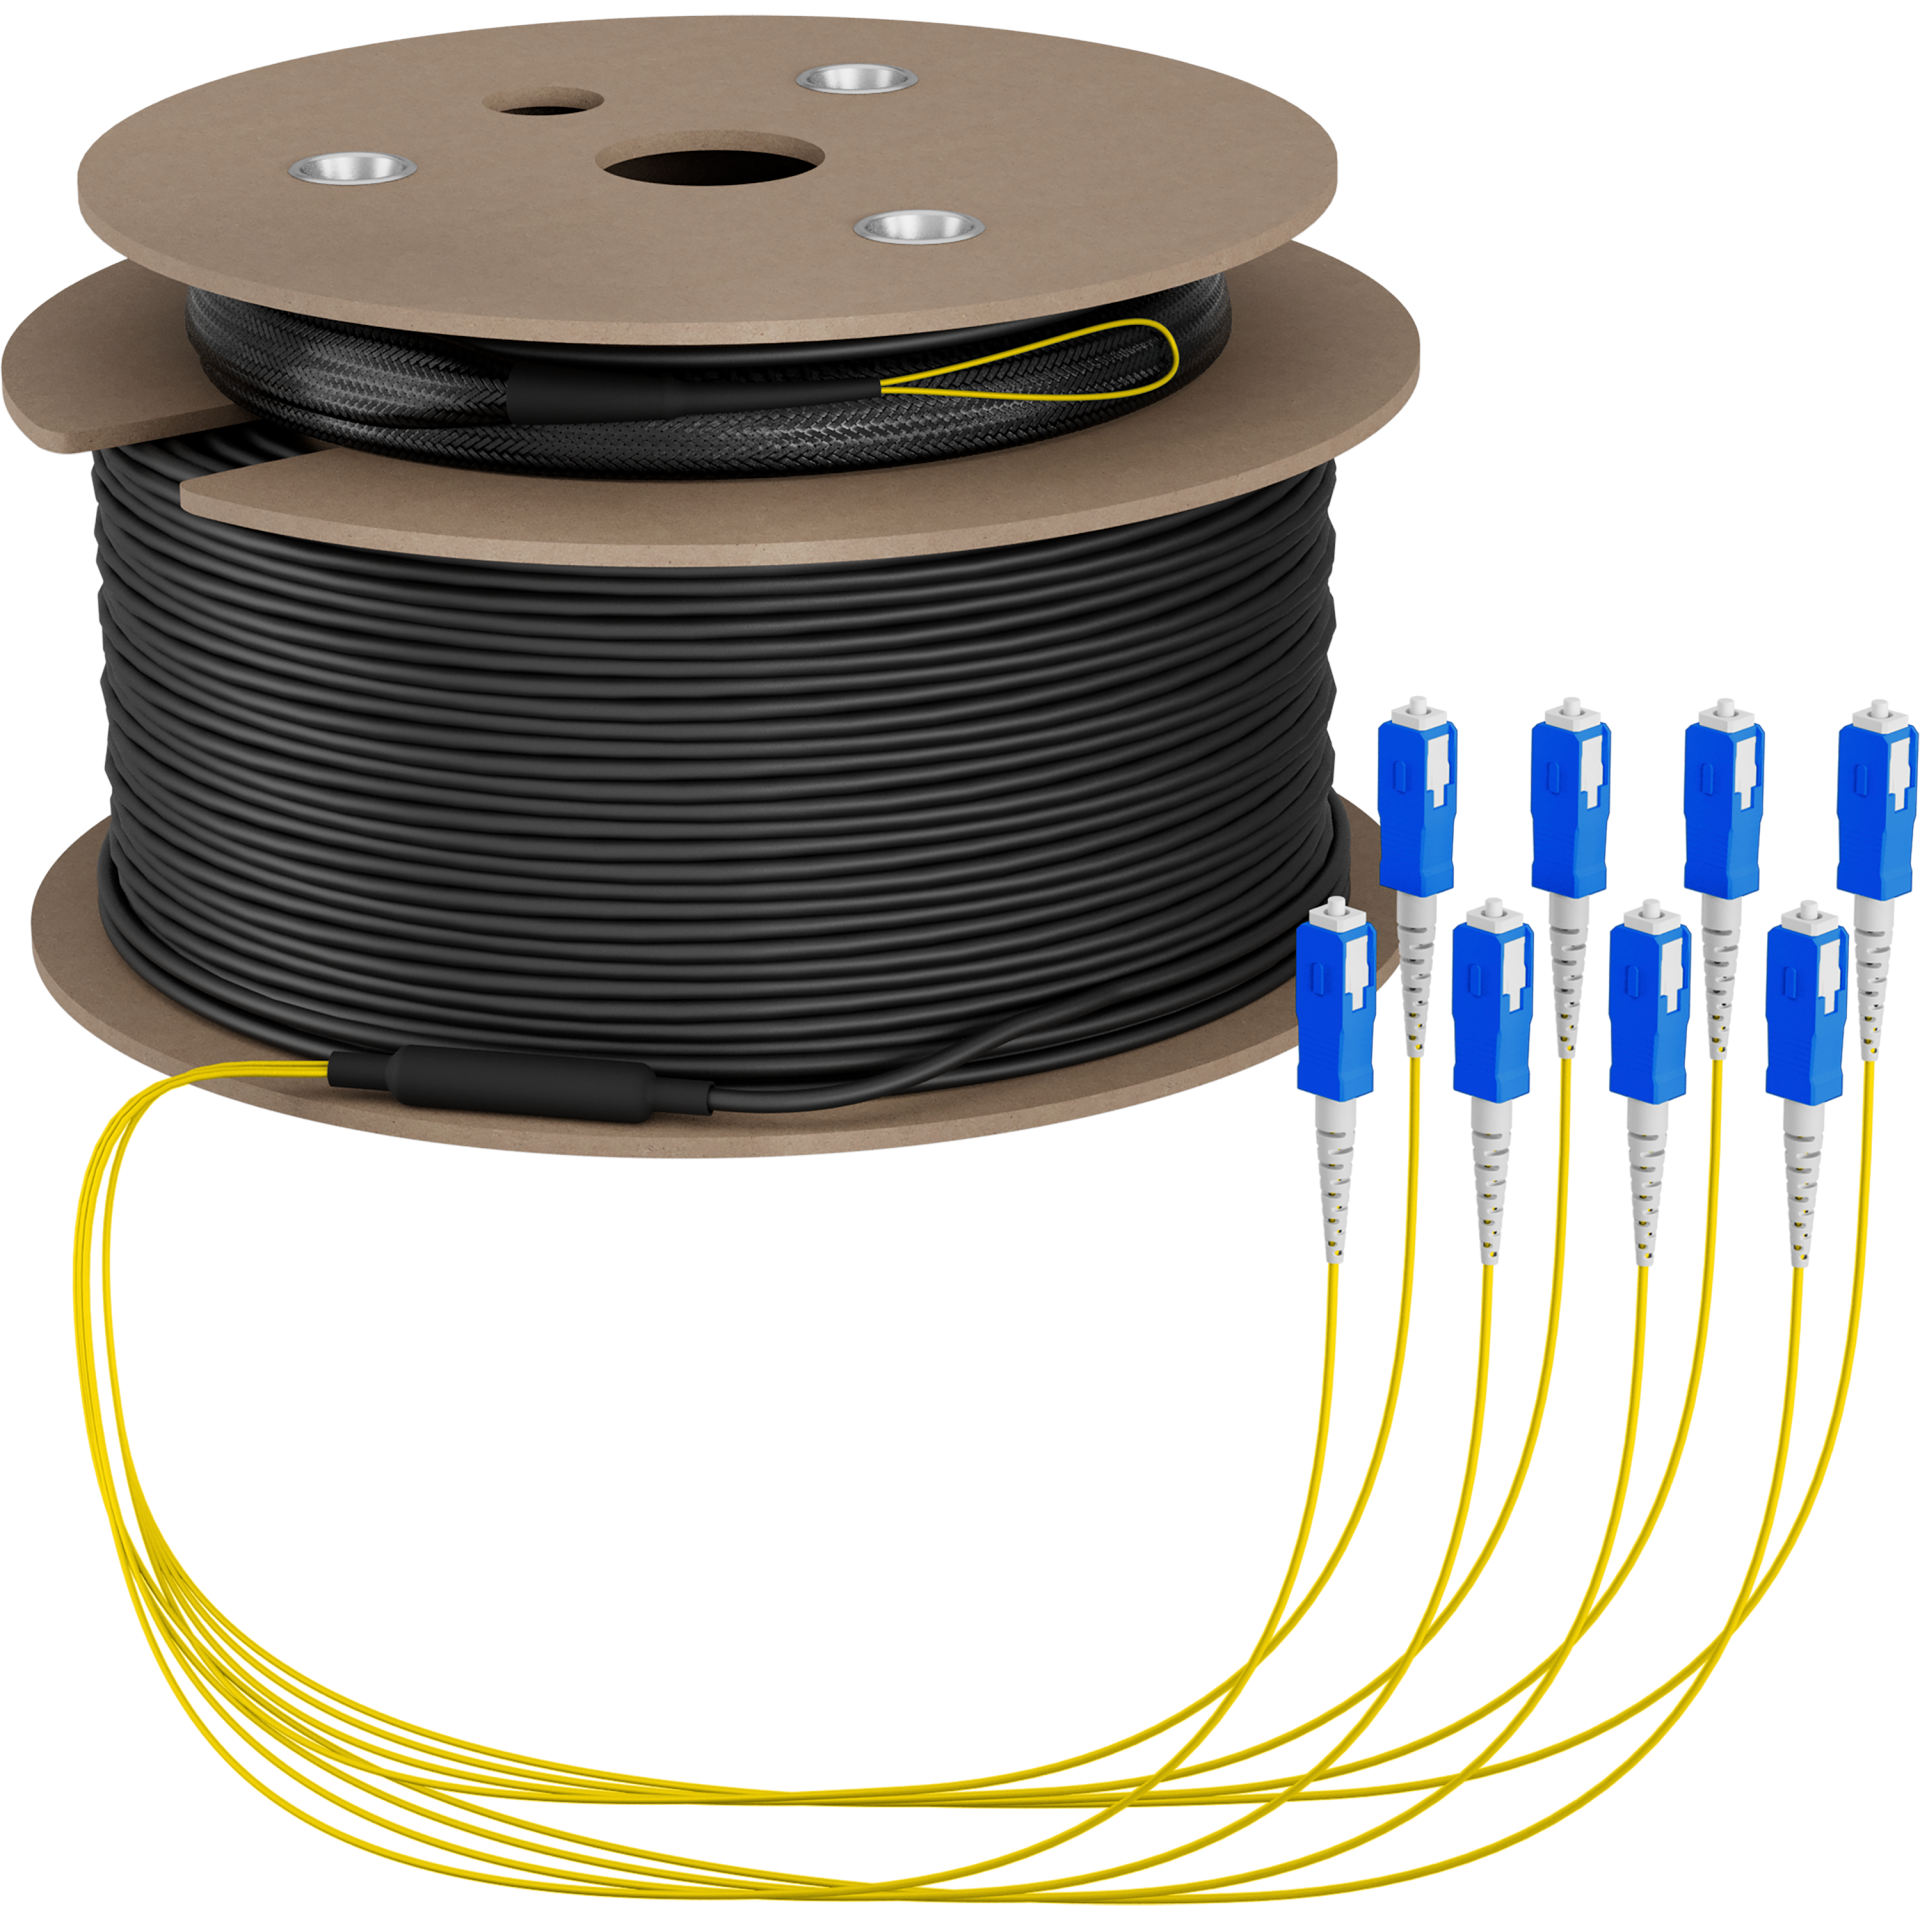 Trunk cable U-DQ(ZN)BH OS2 8E (1x8) SC-SC,130m Dca LSZH